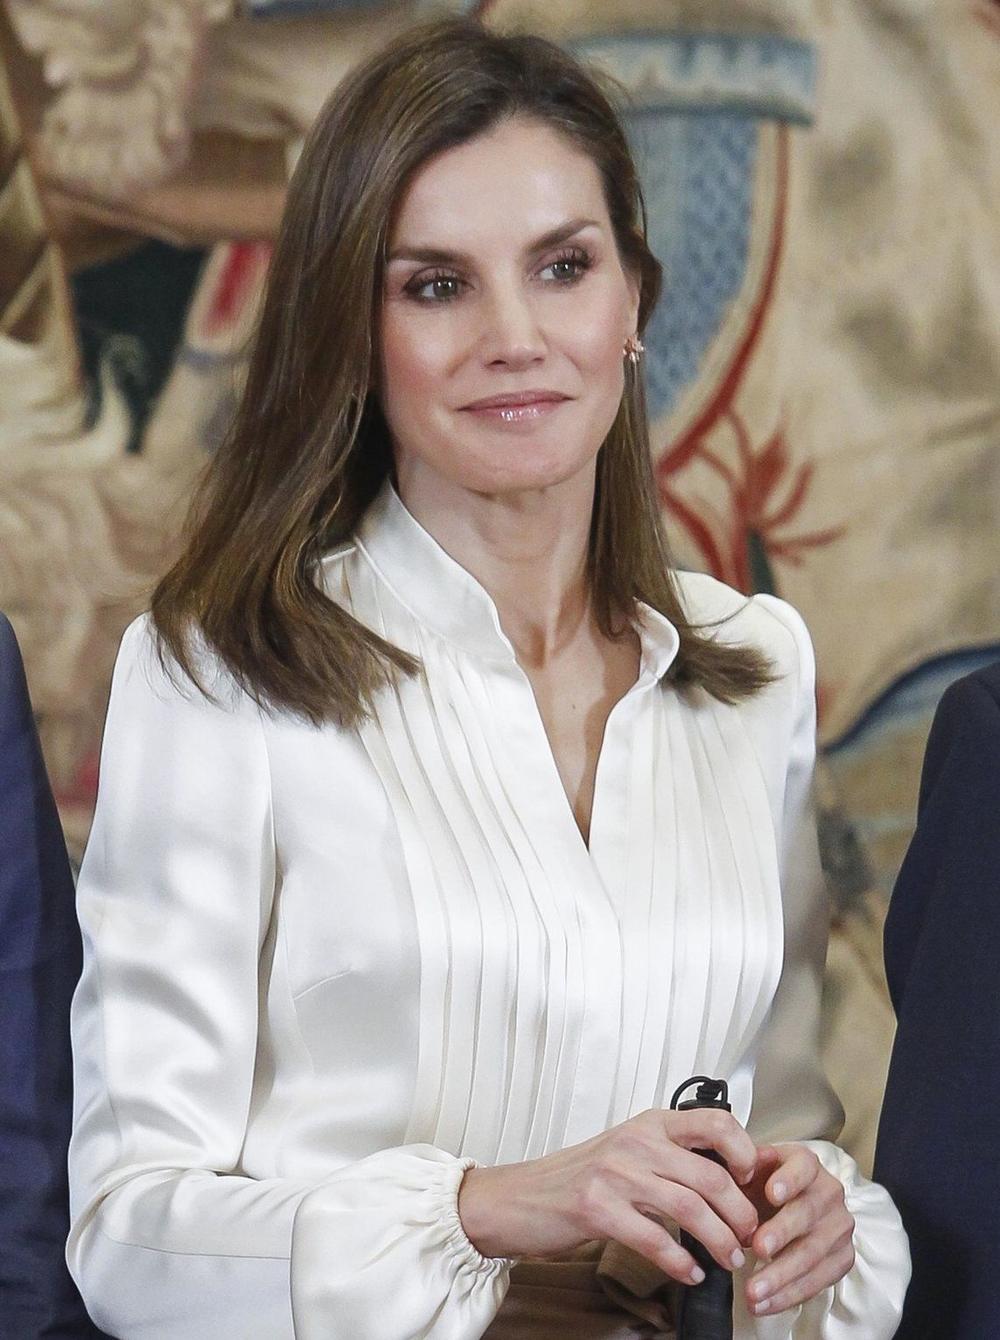 <p>Supruga<strong> kralja Felipea</strong> pokazala je poslovni stil koji ističe seksepil!</p>